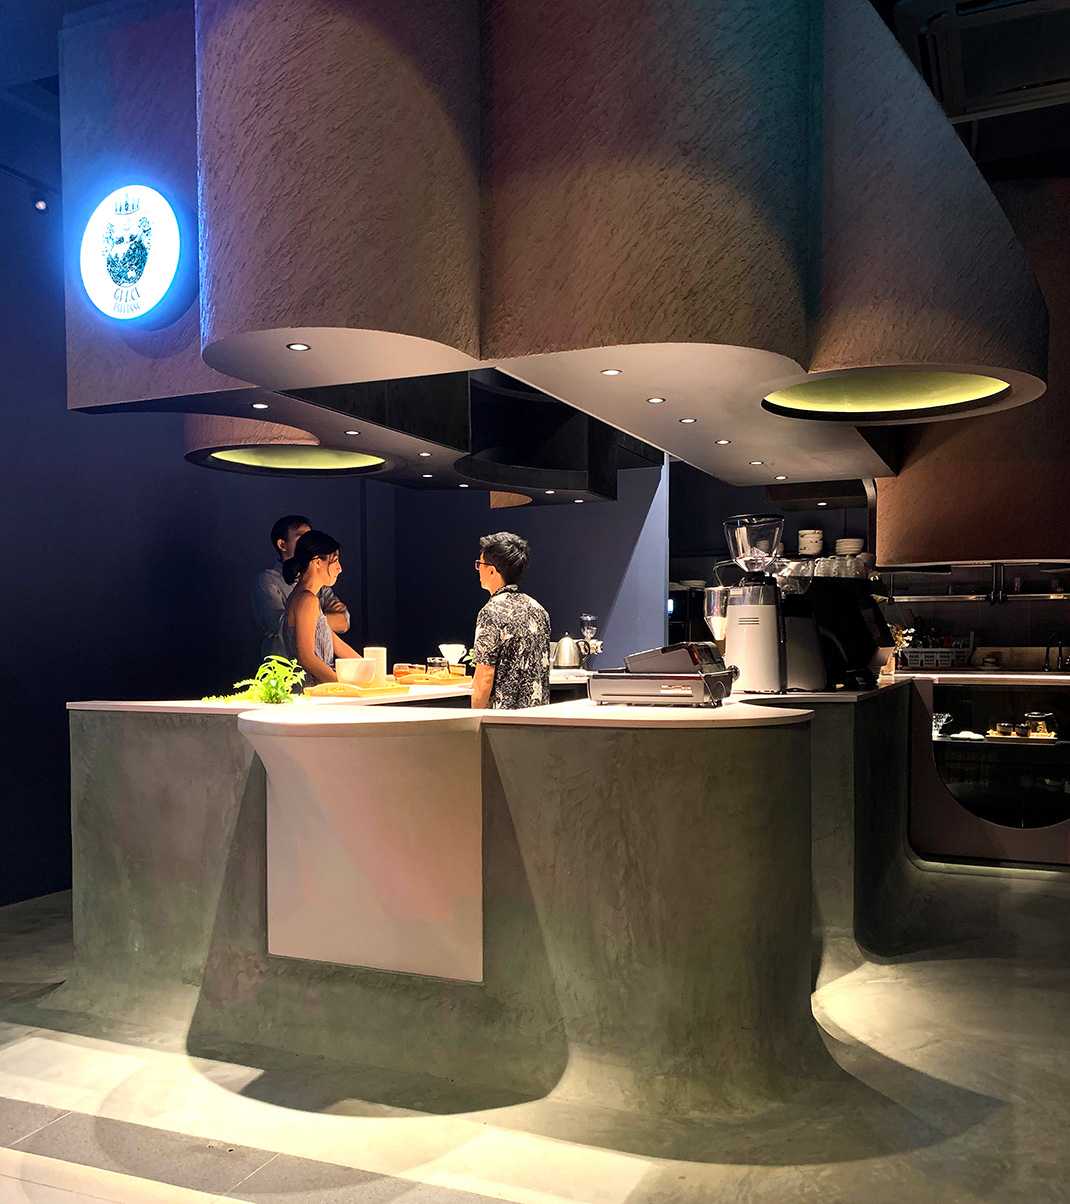 虚空咖啡馆 新加坡 咖啡厅 负空间 几何图形 花瓣形状 餐厅LOGO VI设计 空间设计 视觉餐